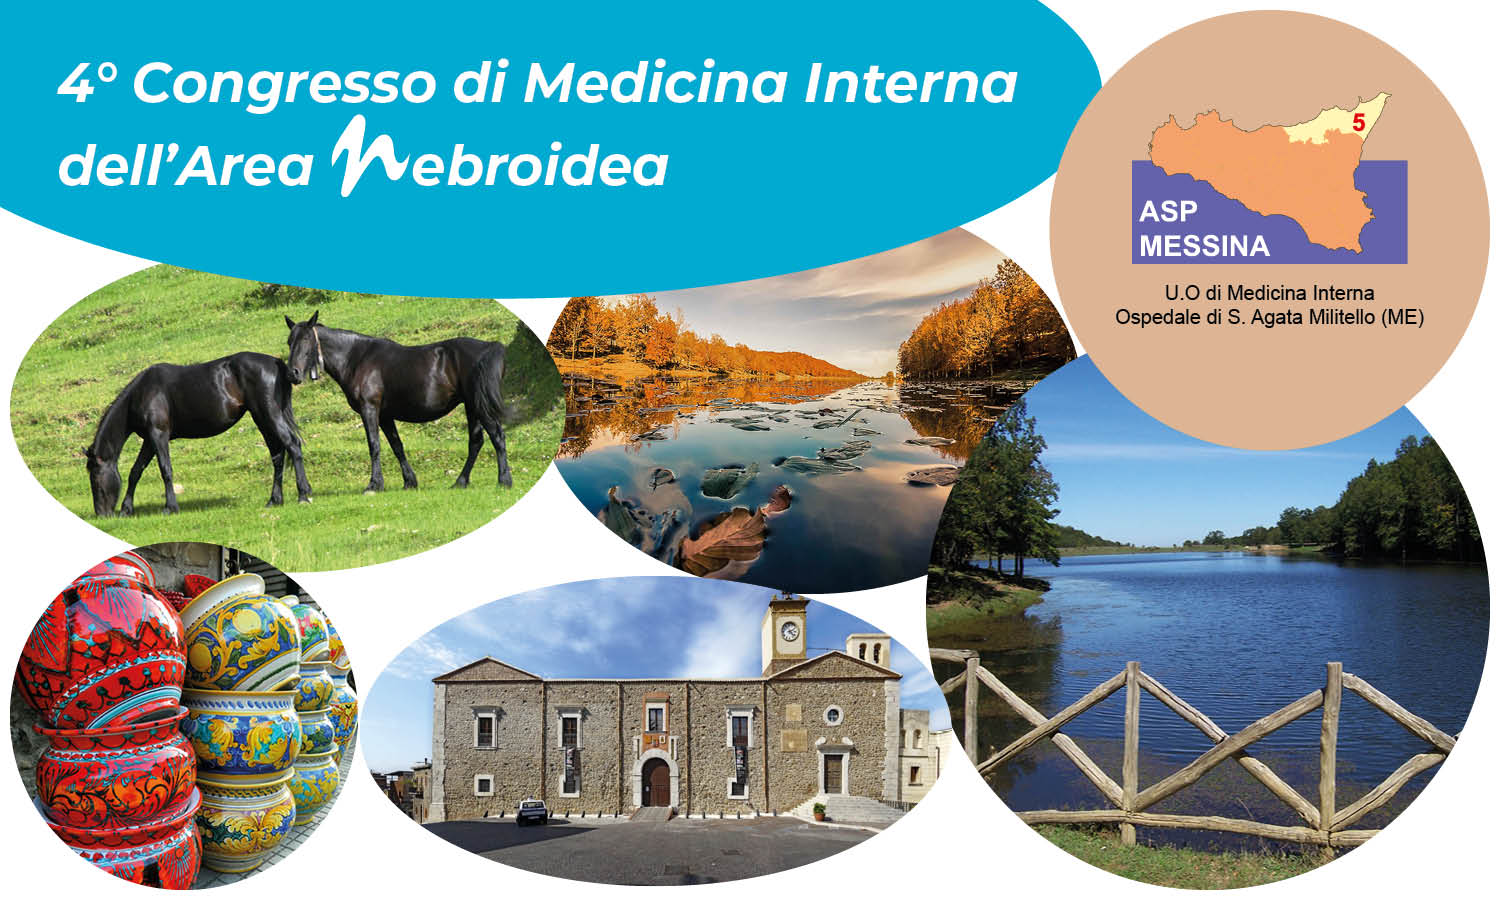 2023-10-27-28 - 4° Congresso di Medicina Interna dell'area nebroidea Slideweb